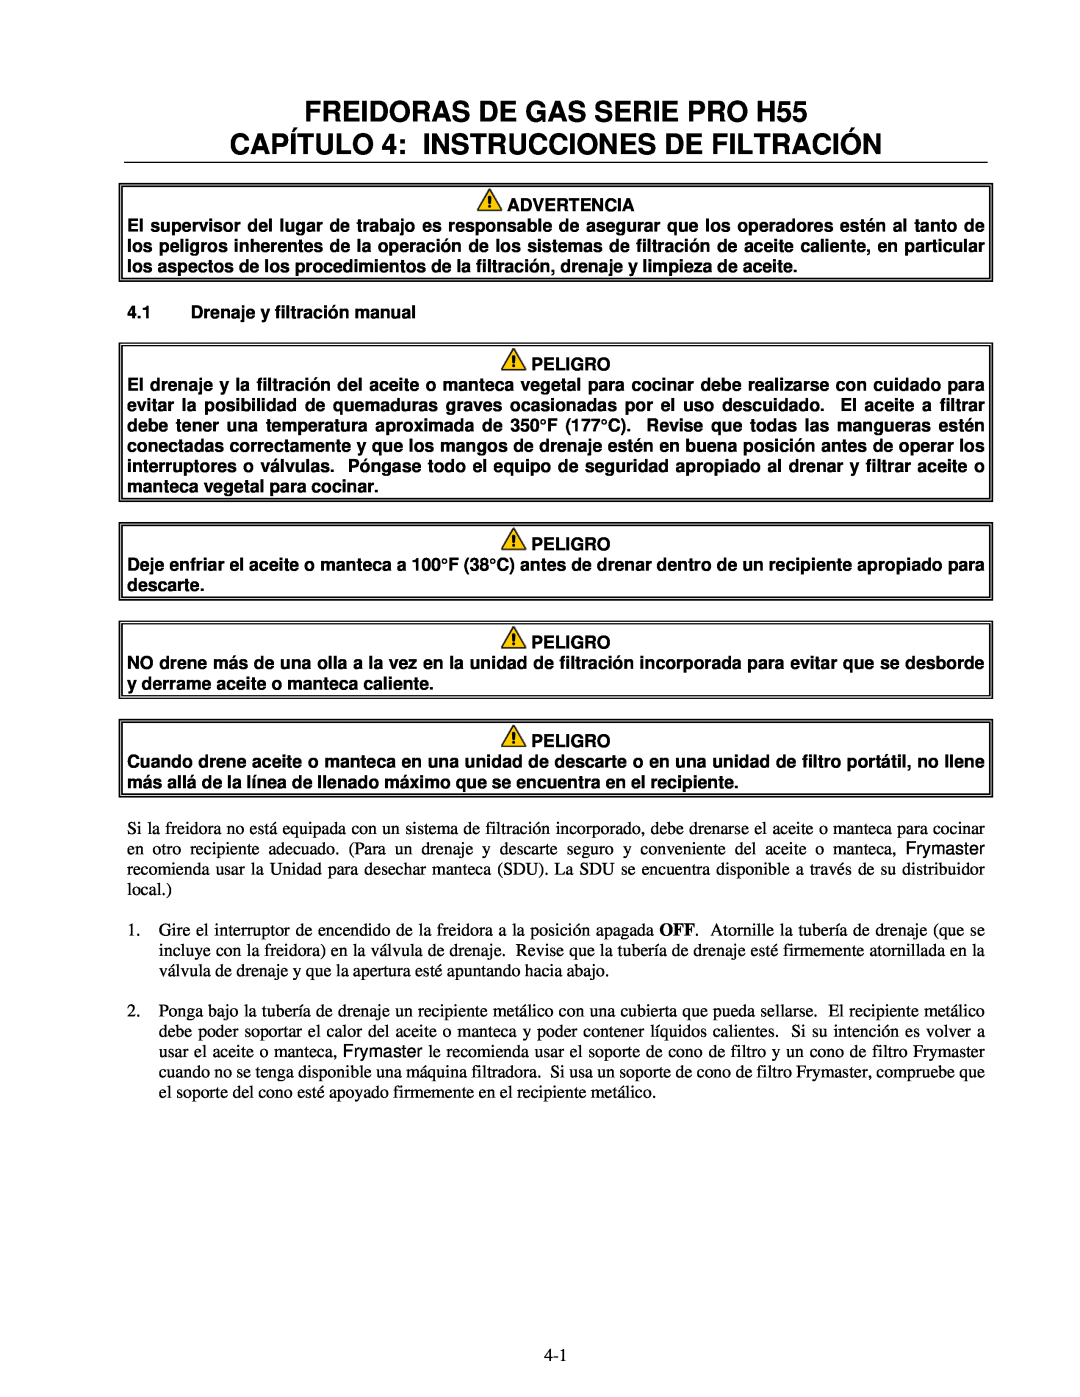 Frymaster manual FREIDORAS DE GAS SERIE PRO H55, CAPÍTULO 4 INSTRUCCIONES DE FILTRACIÓN, Advertencia, Peligro 